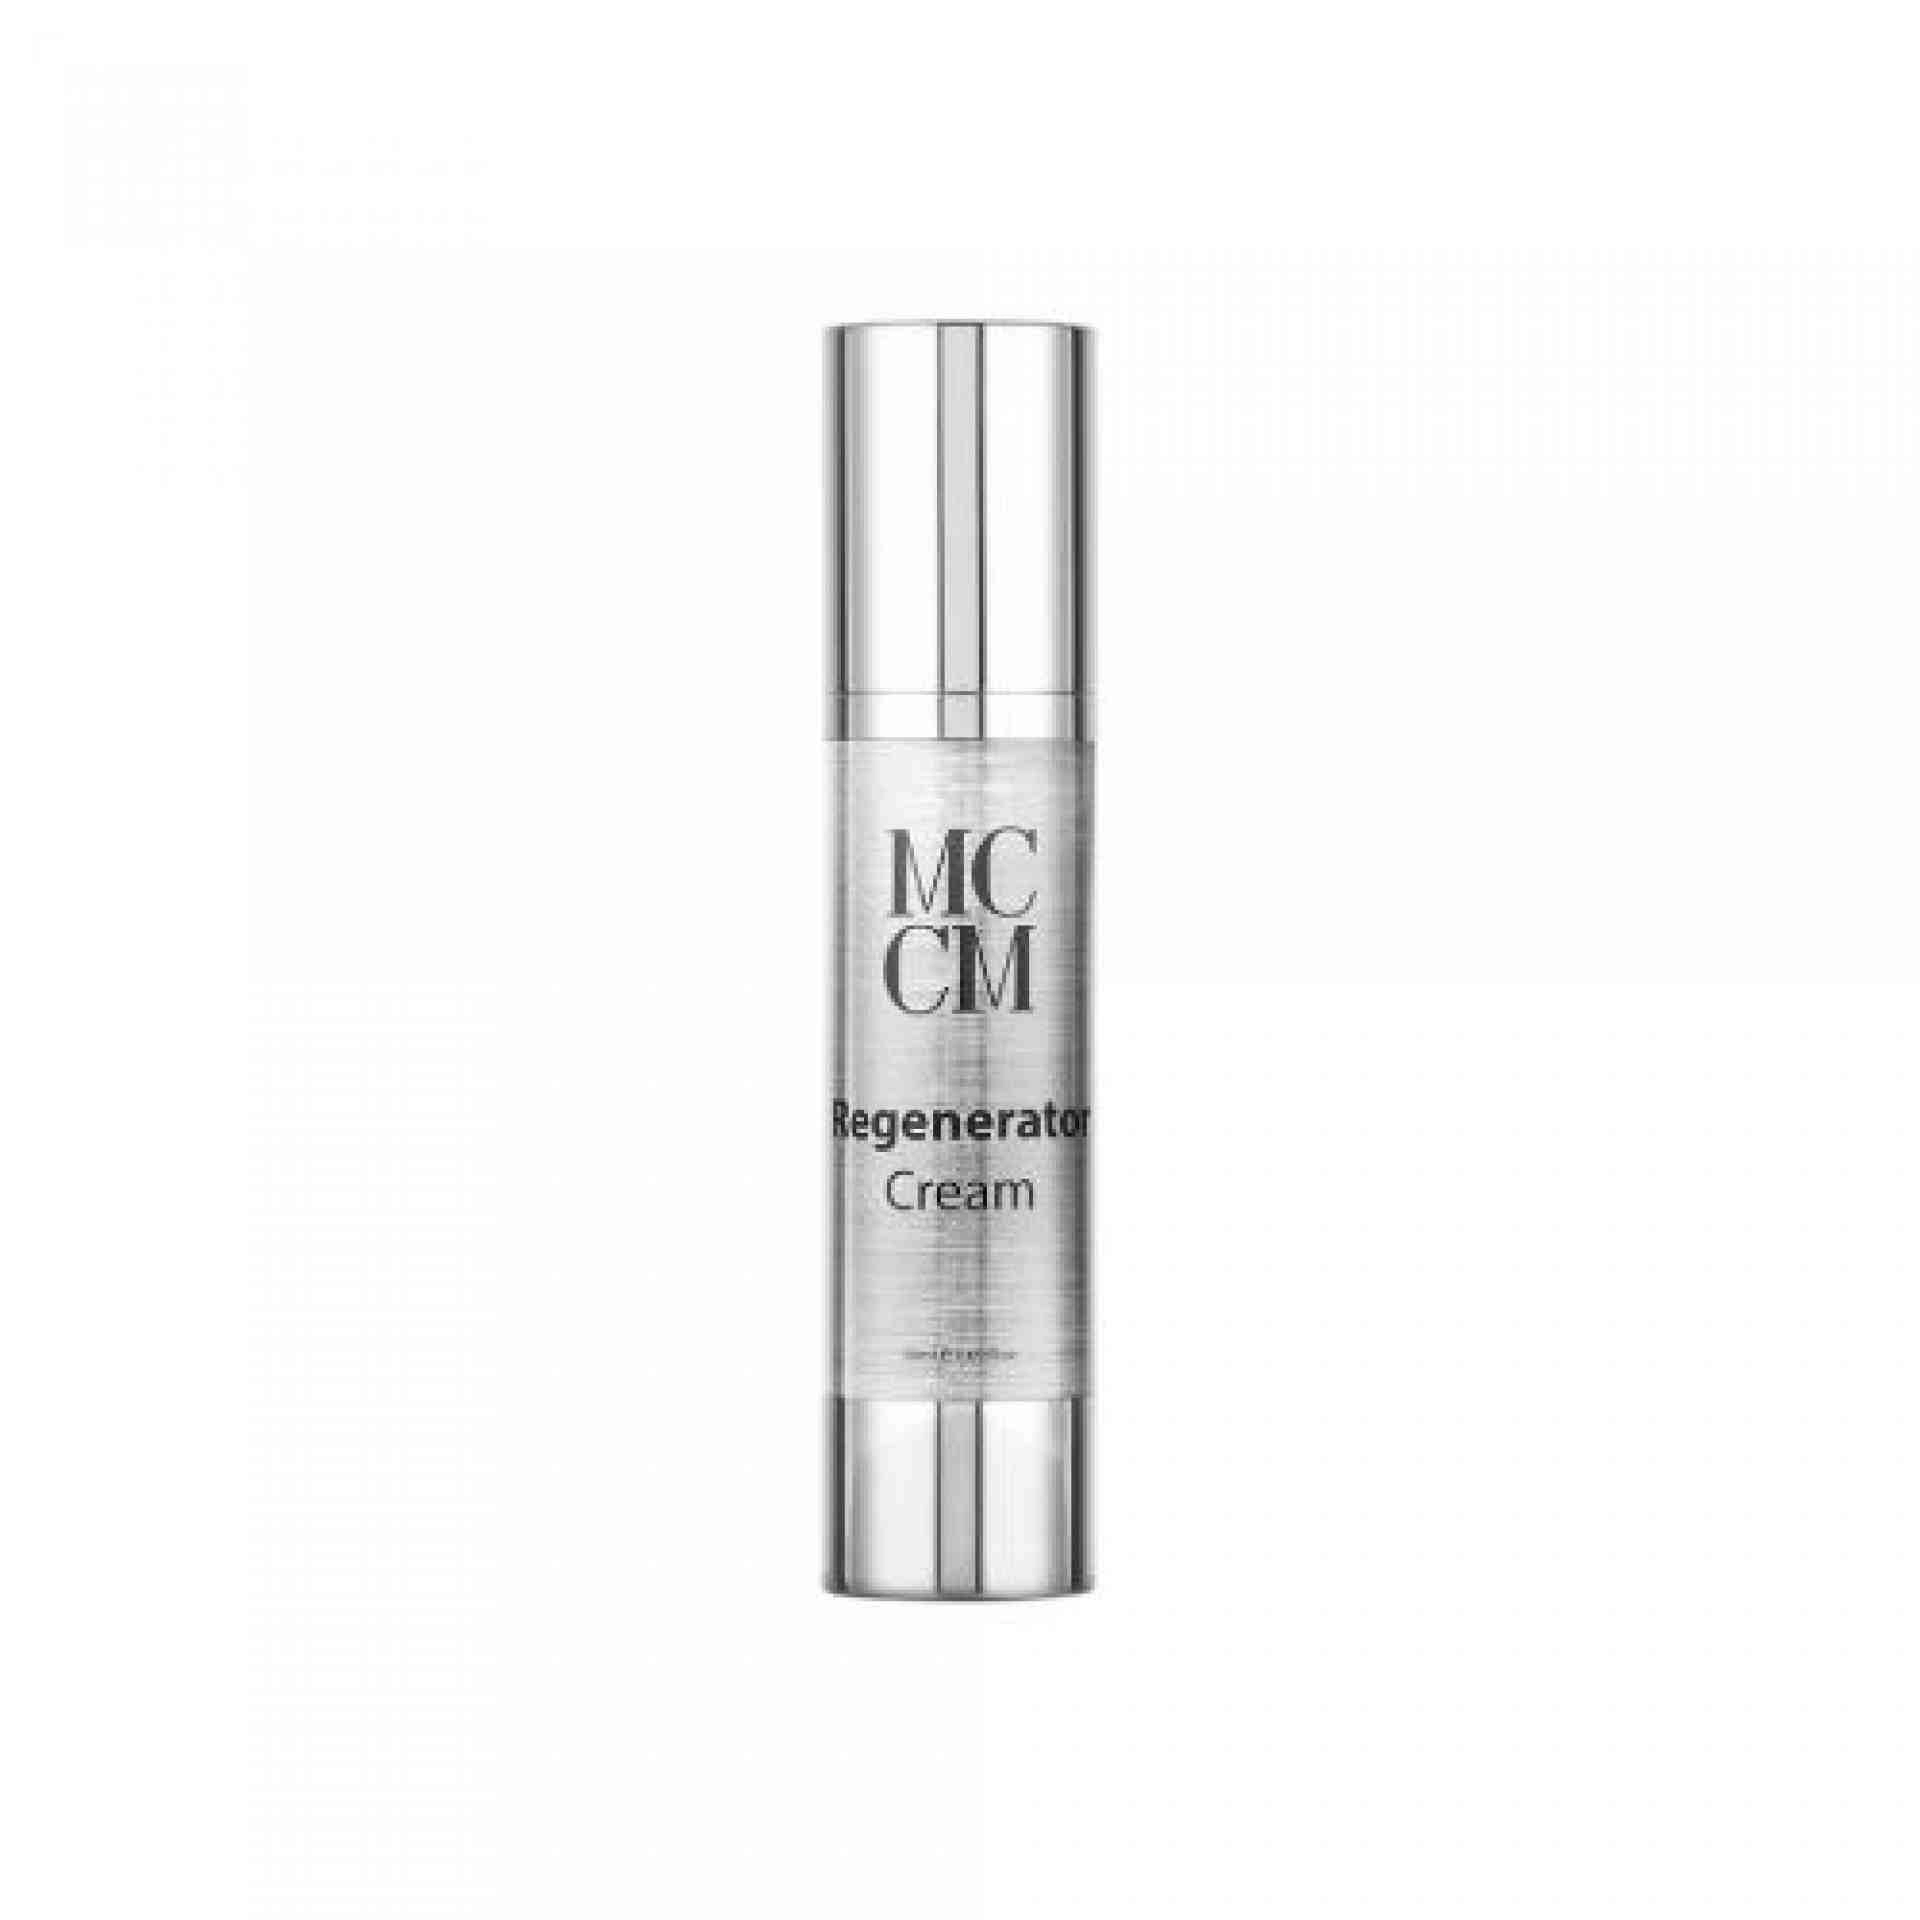 Regenator Cream | Crema Facial Regeneradora 50 ml - Linea Facial - MCCM ®